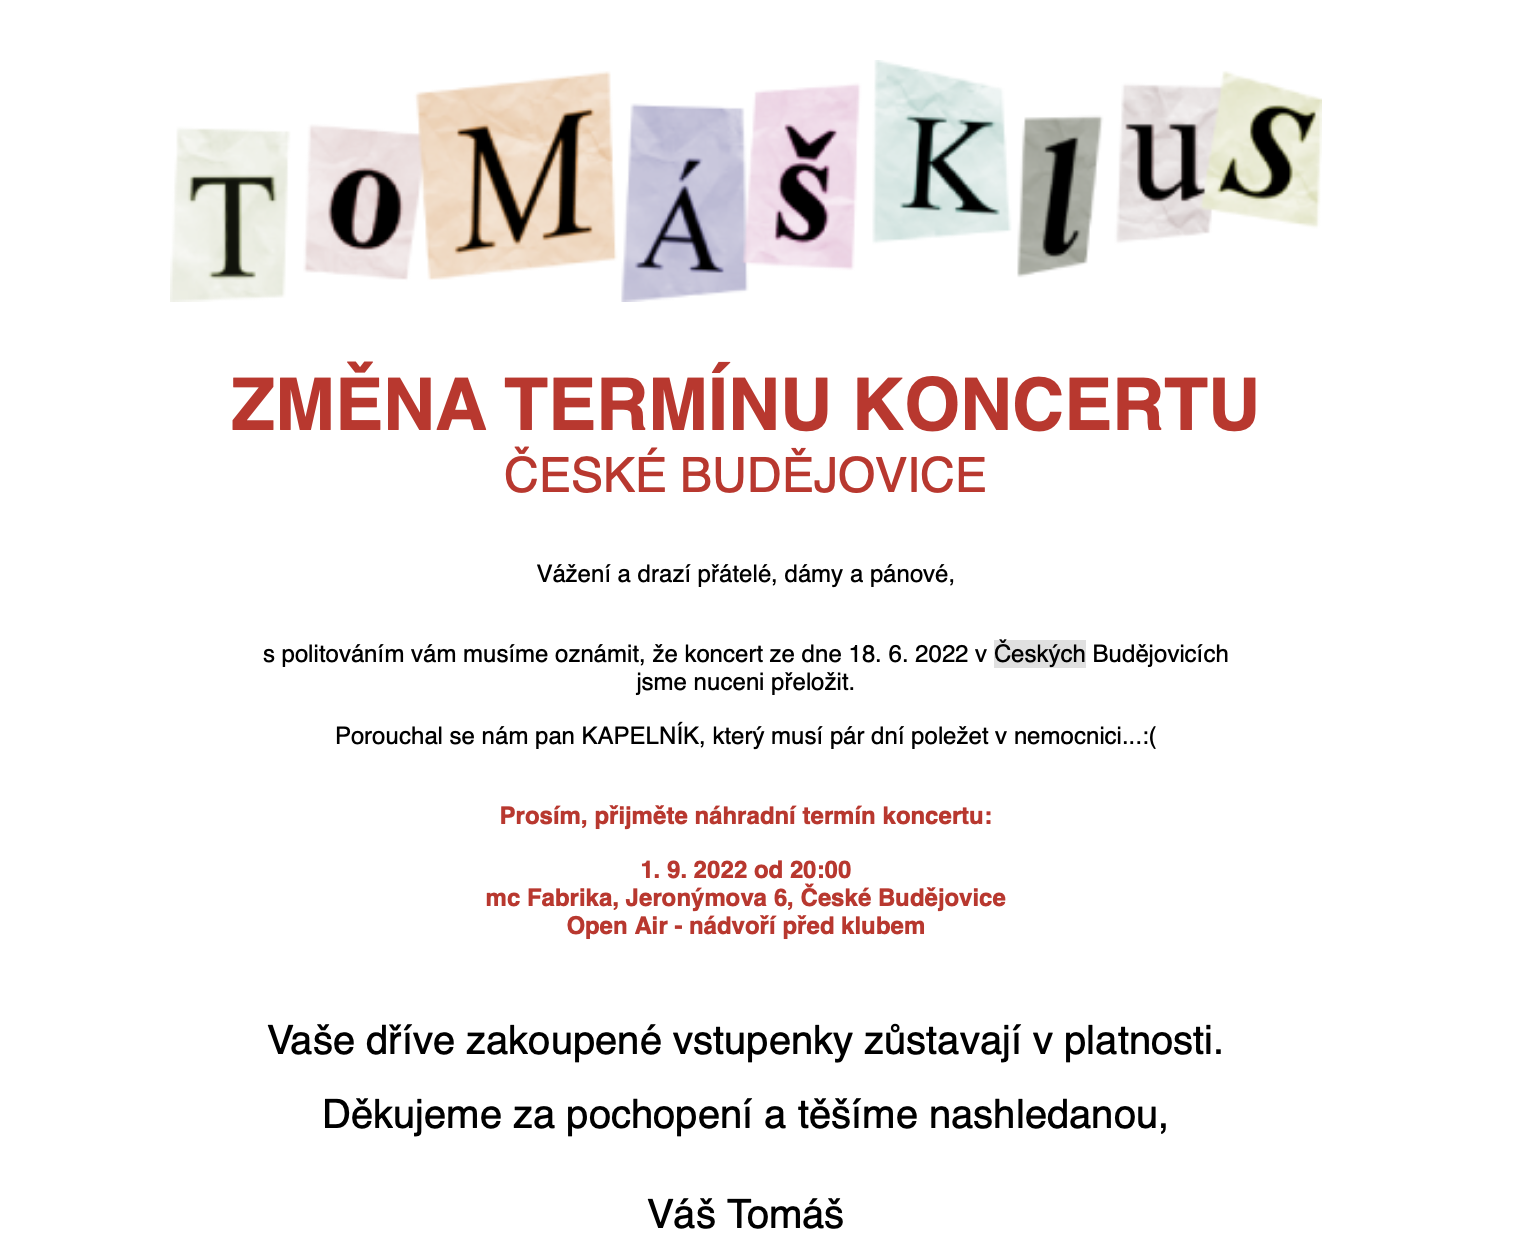 Tomáš Klus - přesunuto z letního kina Háječek